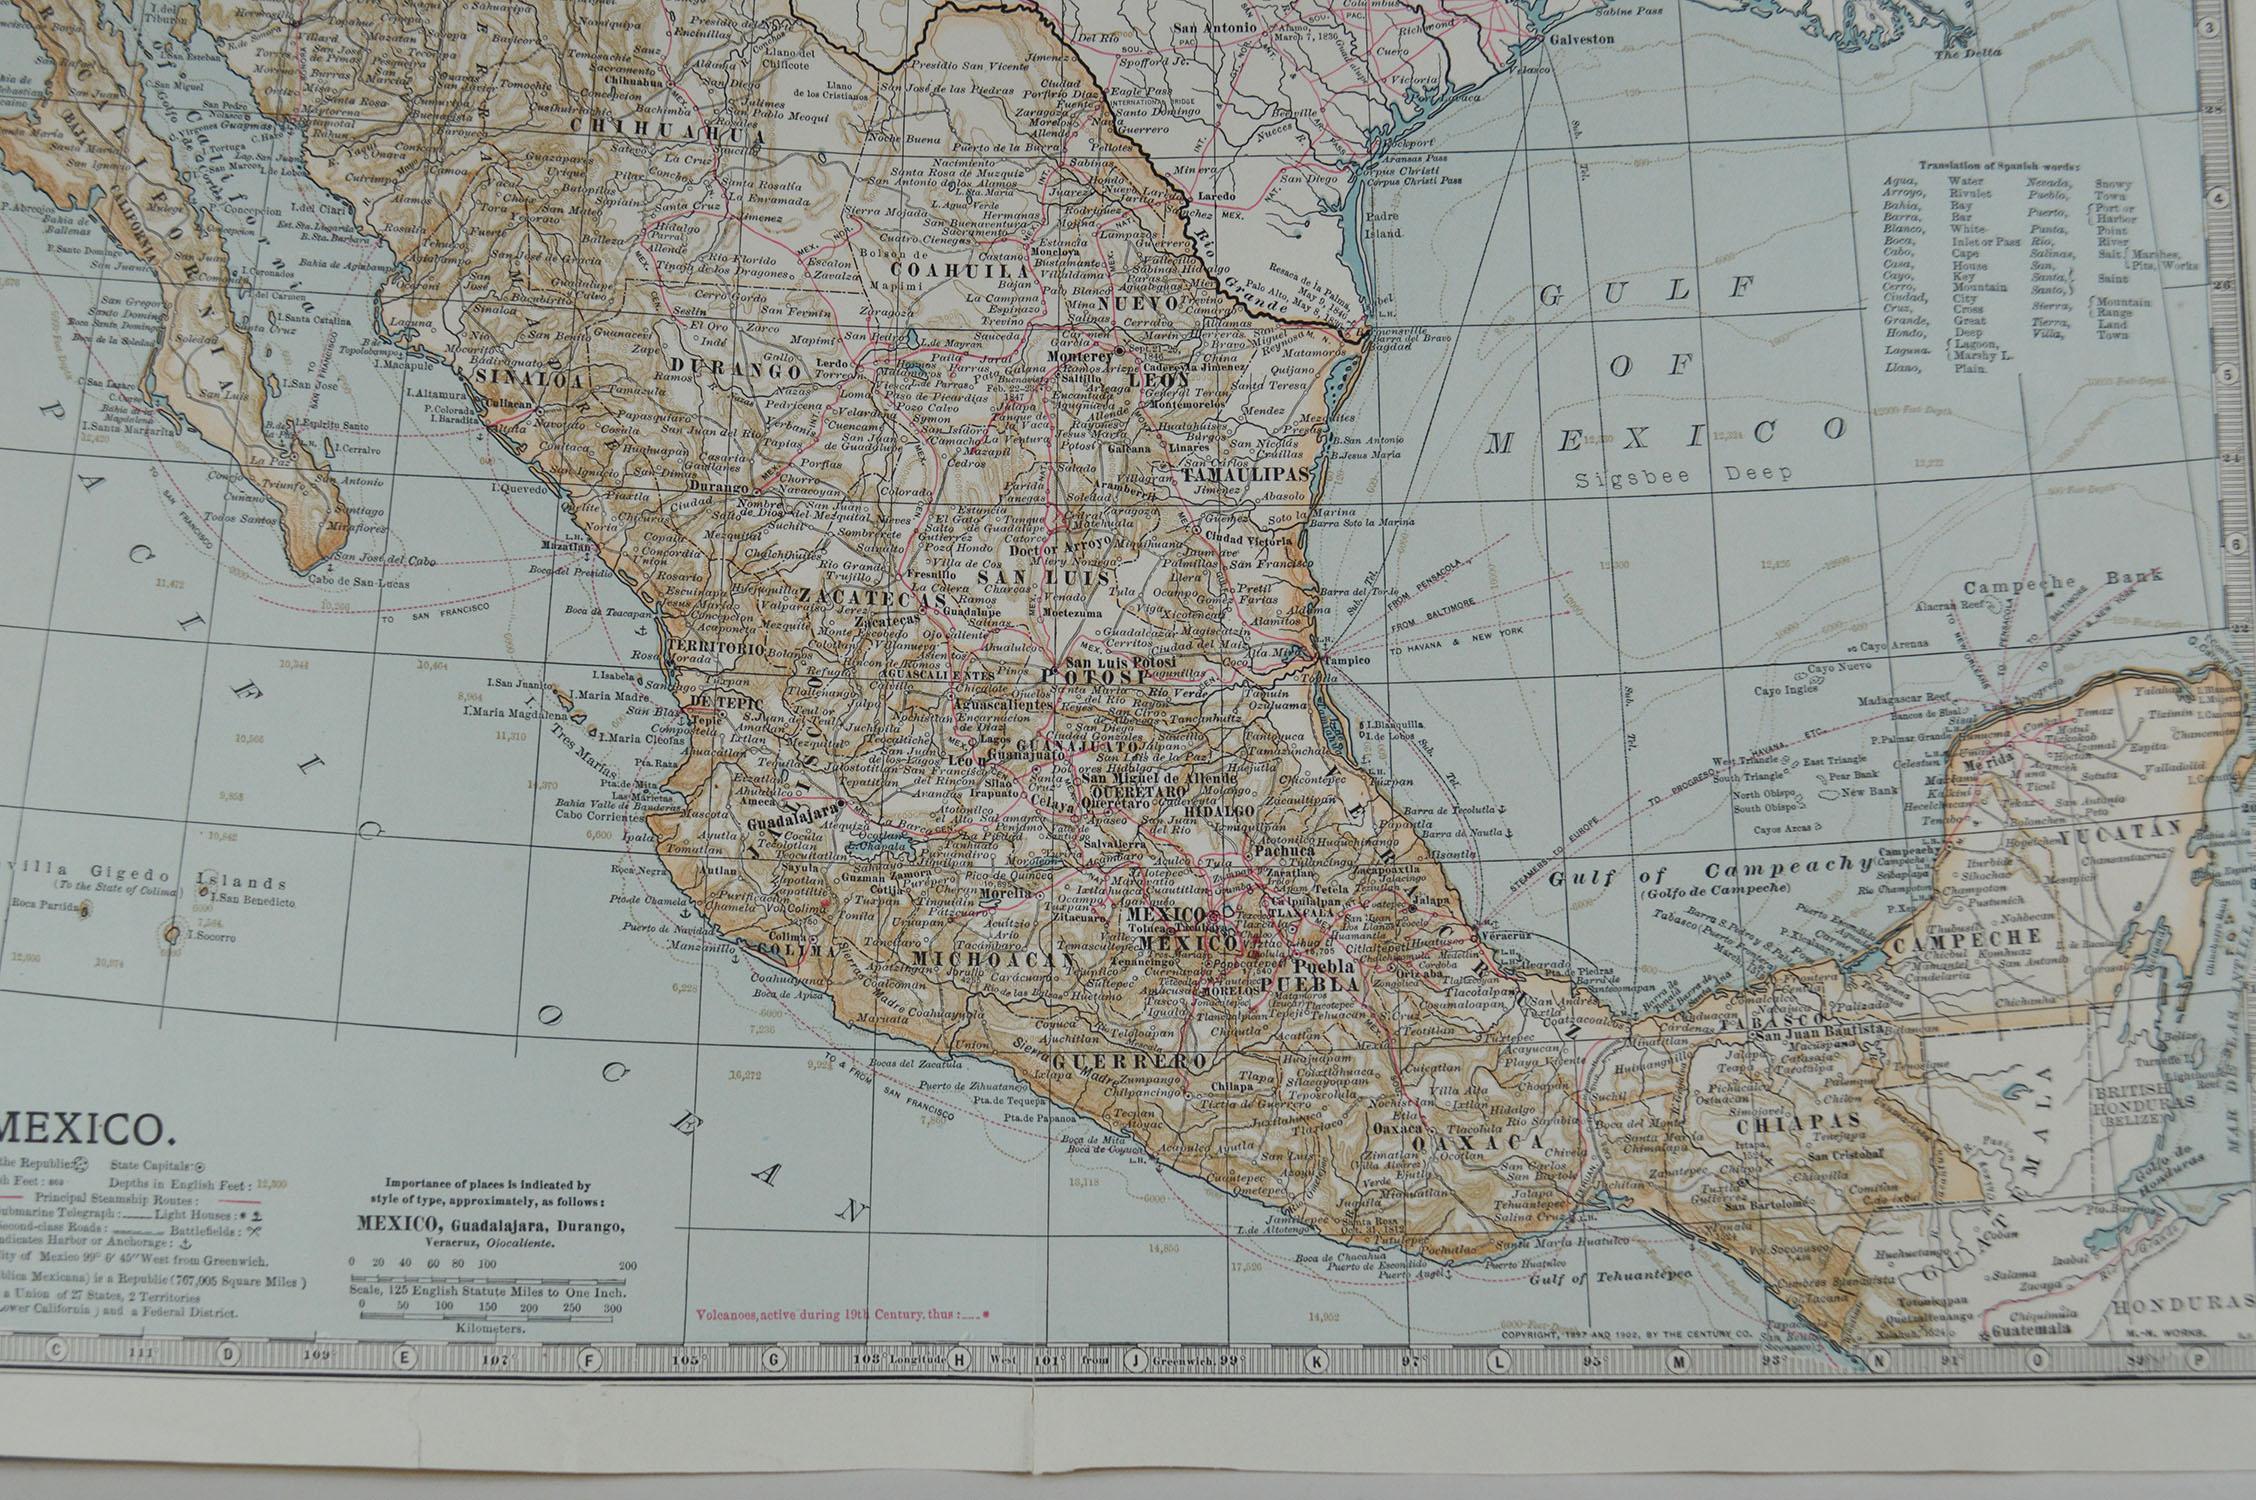 Other Original Antique Map of Mexico, circa 1890